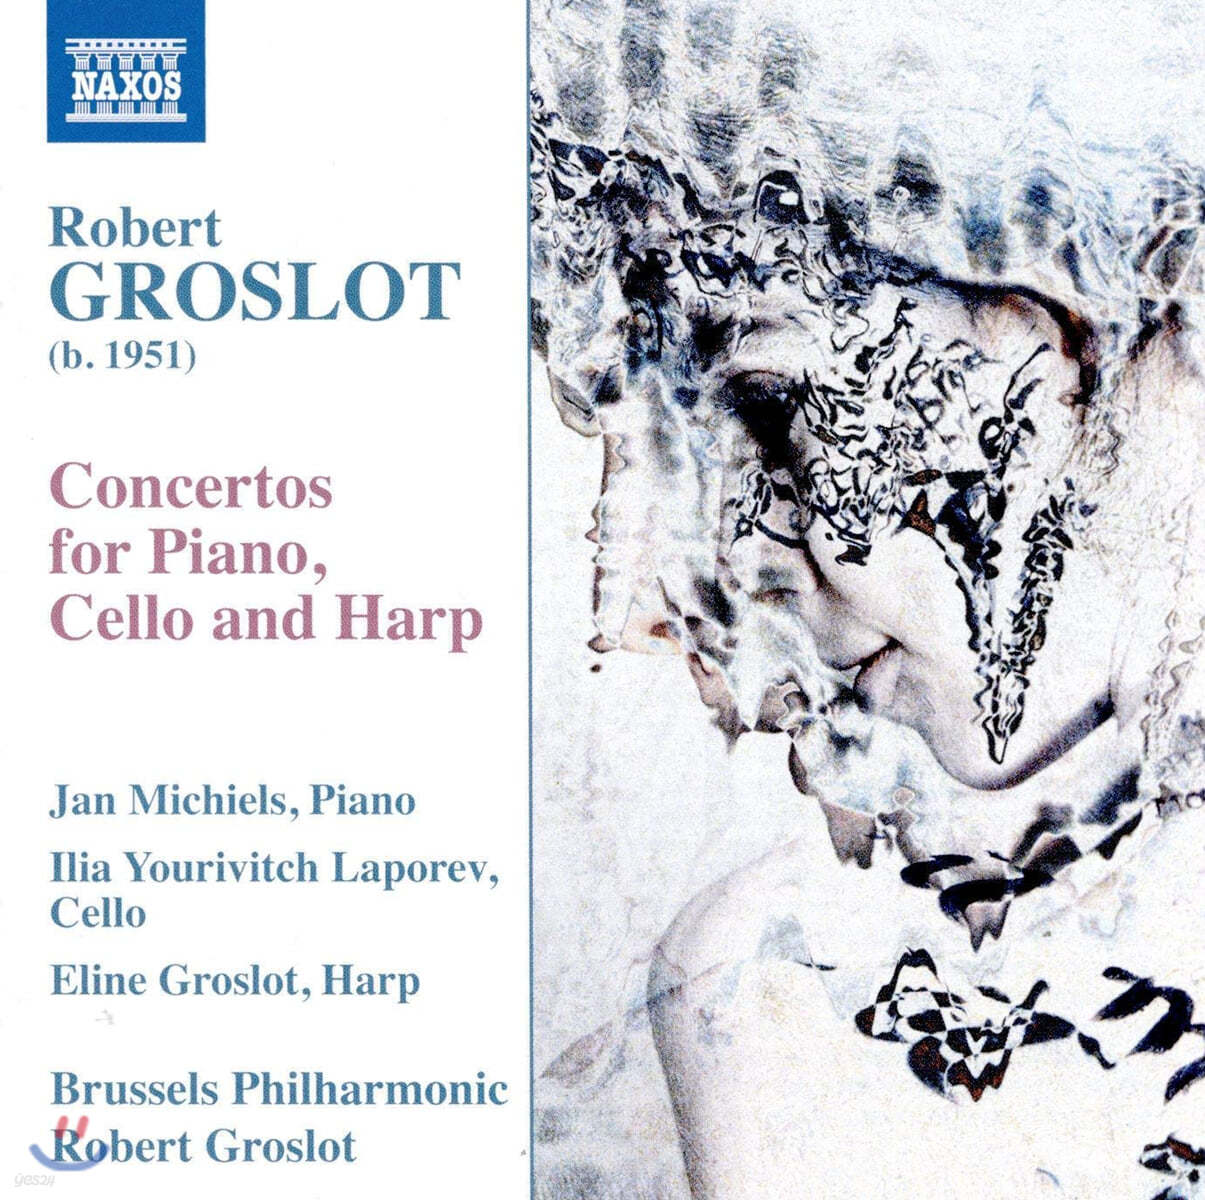 로베르 그로로: 피아노, 첼로 그리고 하프를 위한 협주곡 작품집 (Robert Groslot: Concertos for Piano, Cello and Harp)